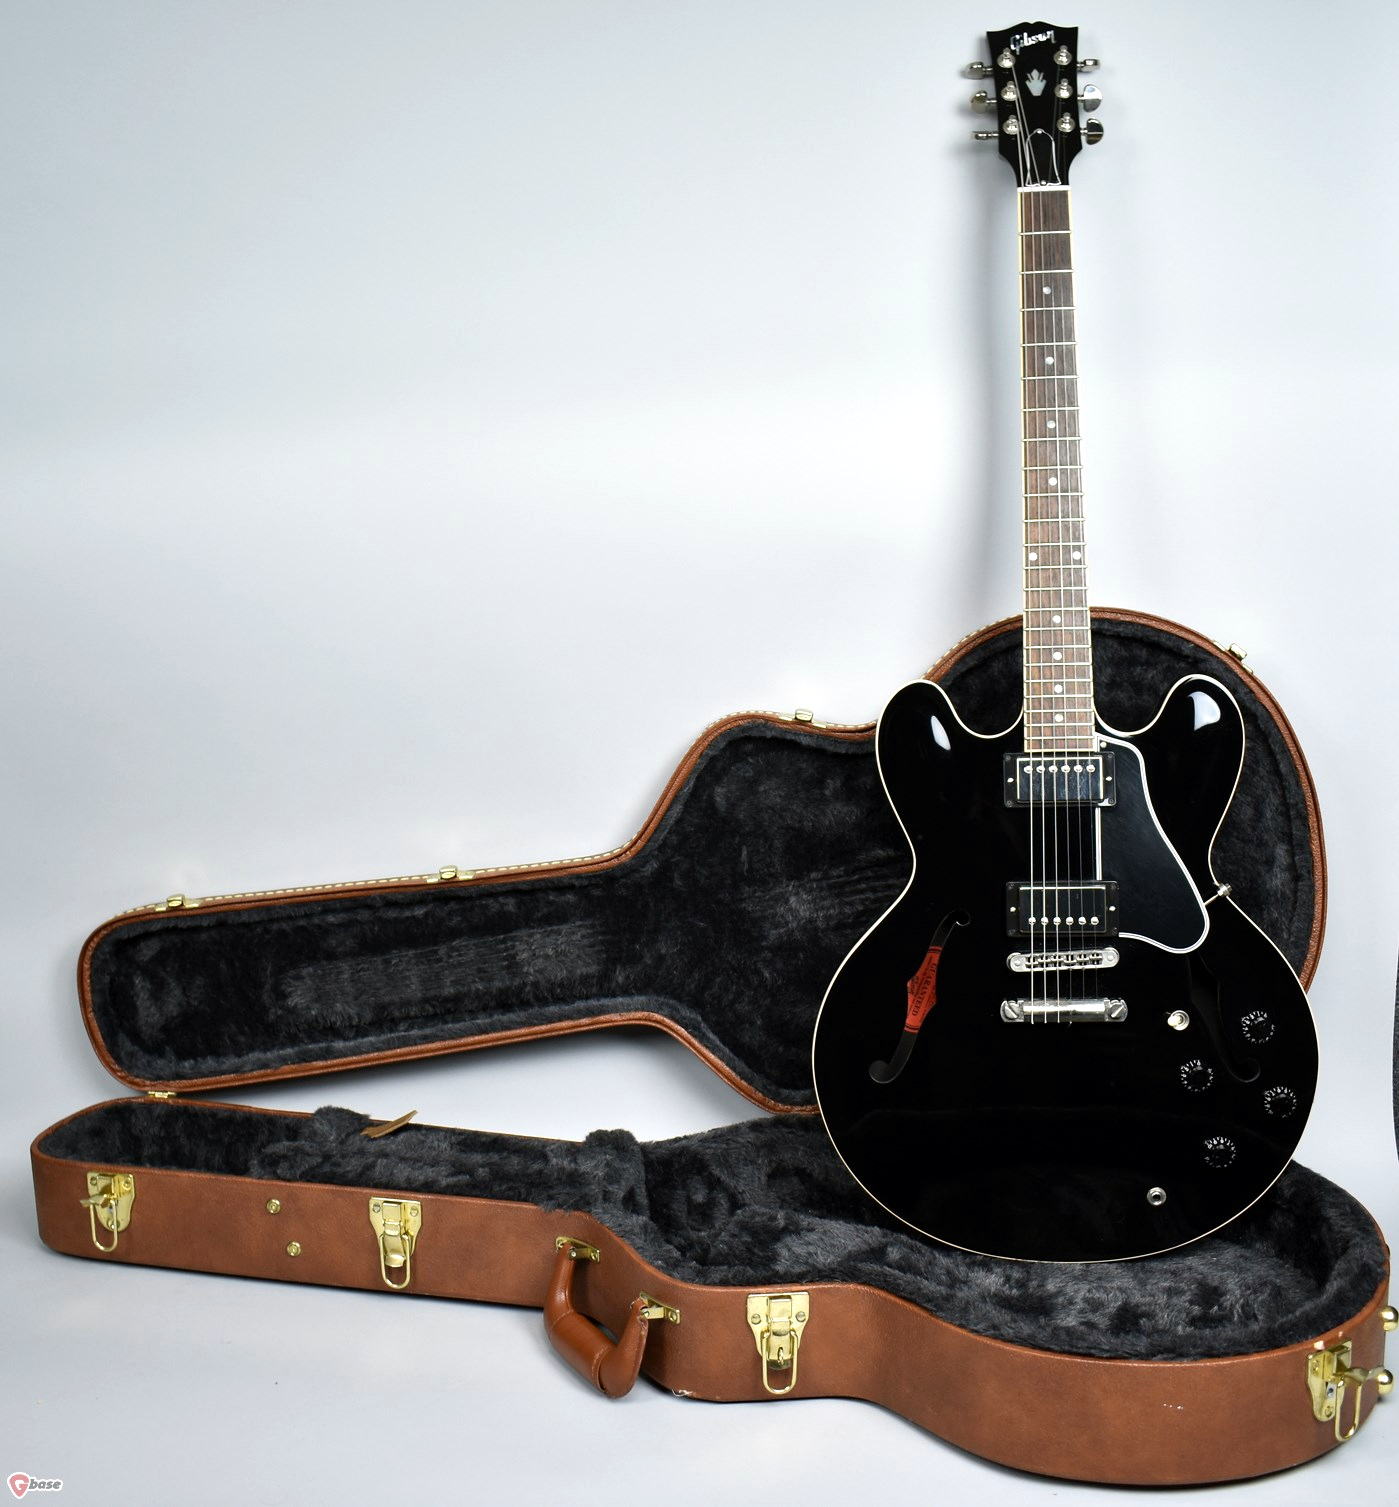 Repair Log: 1988 Black Gibson 335 semi-hollow electric guitar SN